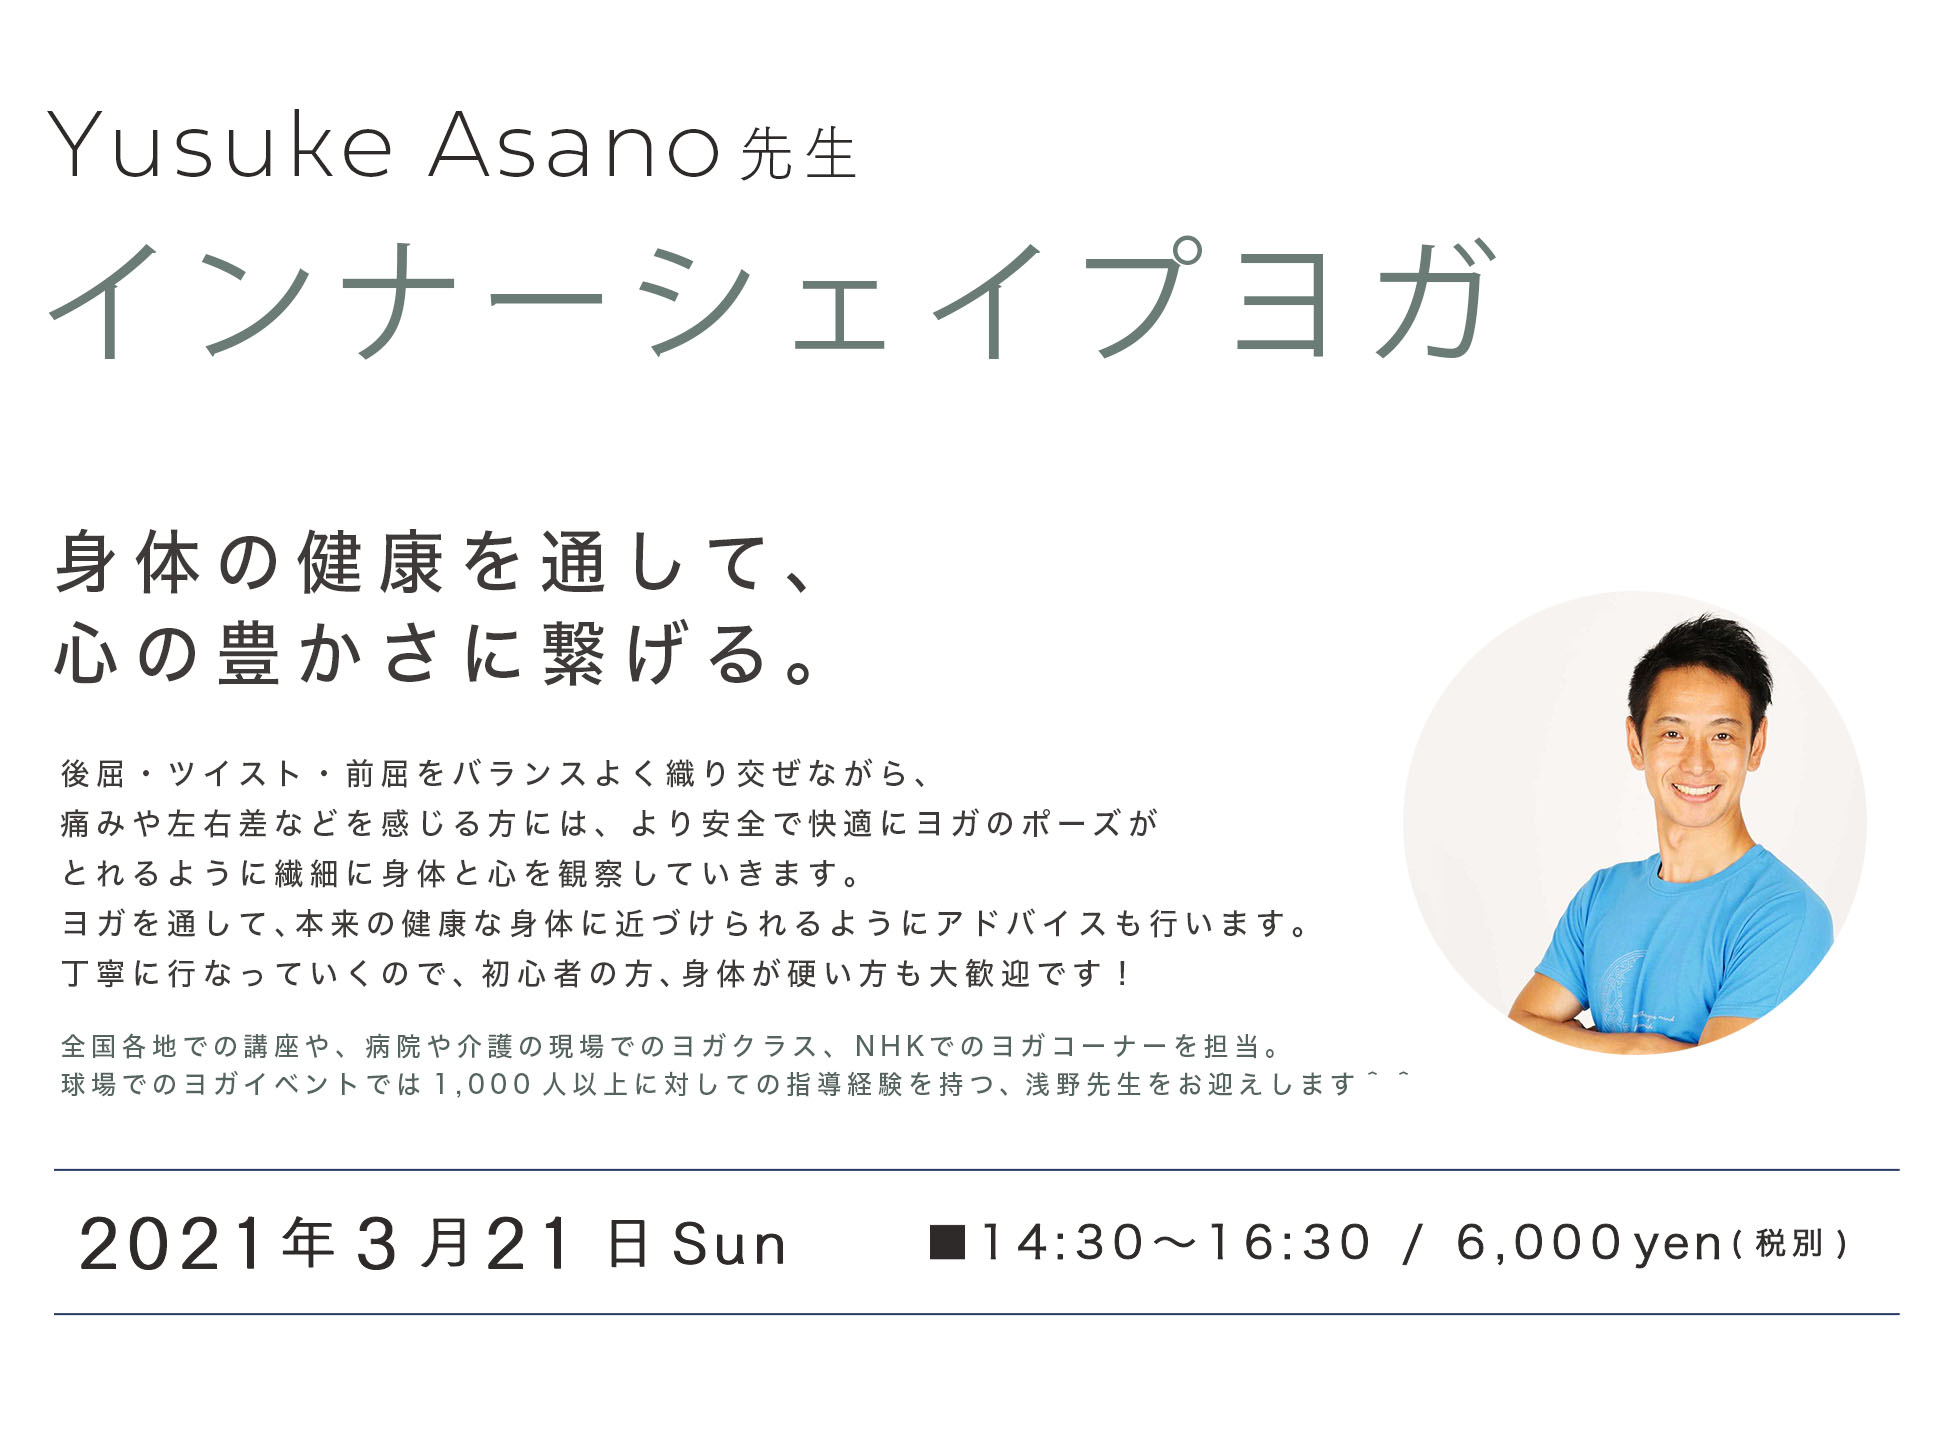 Yusuke Asano